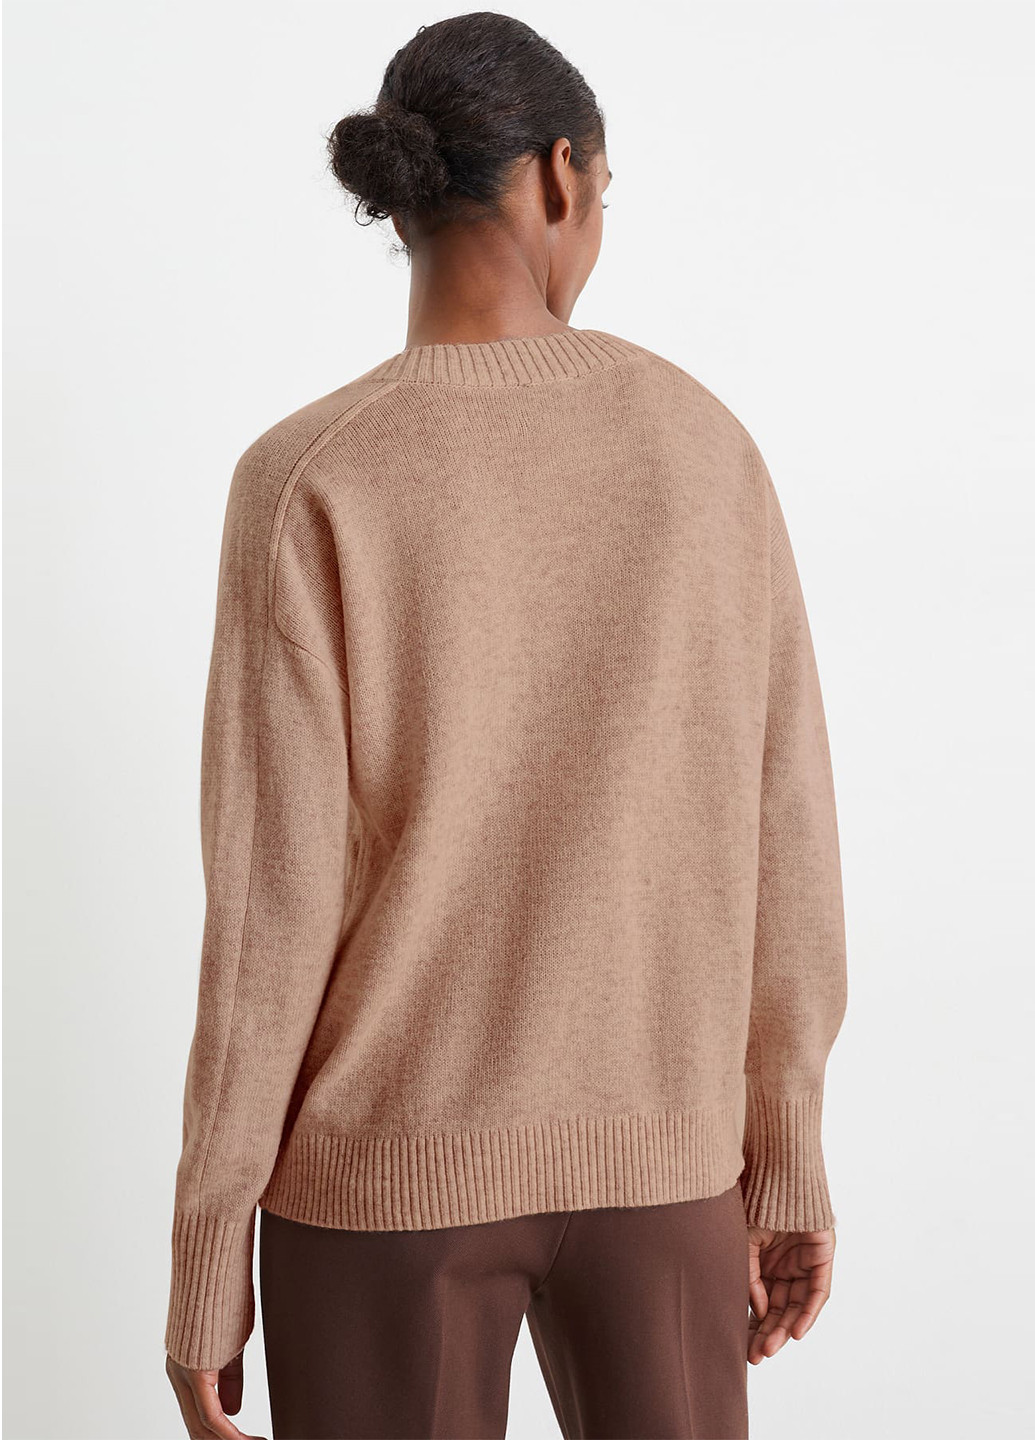 Бежевый демисезонный пуловер пуловер C&A